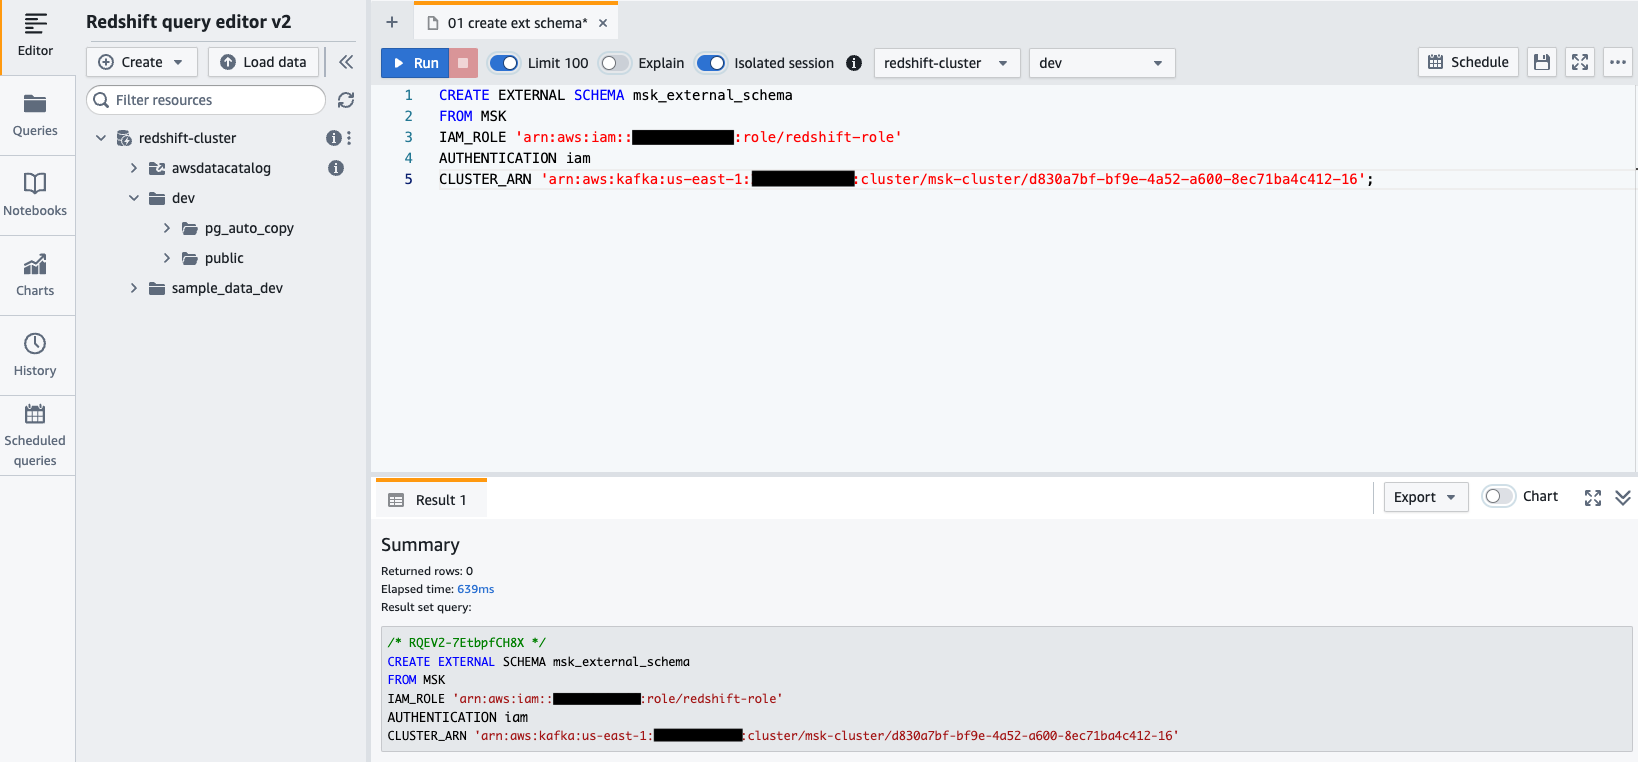 redshift query-editor v2 toont de SQL-instructie die wordt gebruikt om een ​​extern schema van Amazon MSK te maken